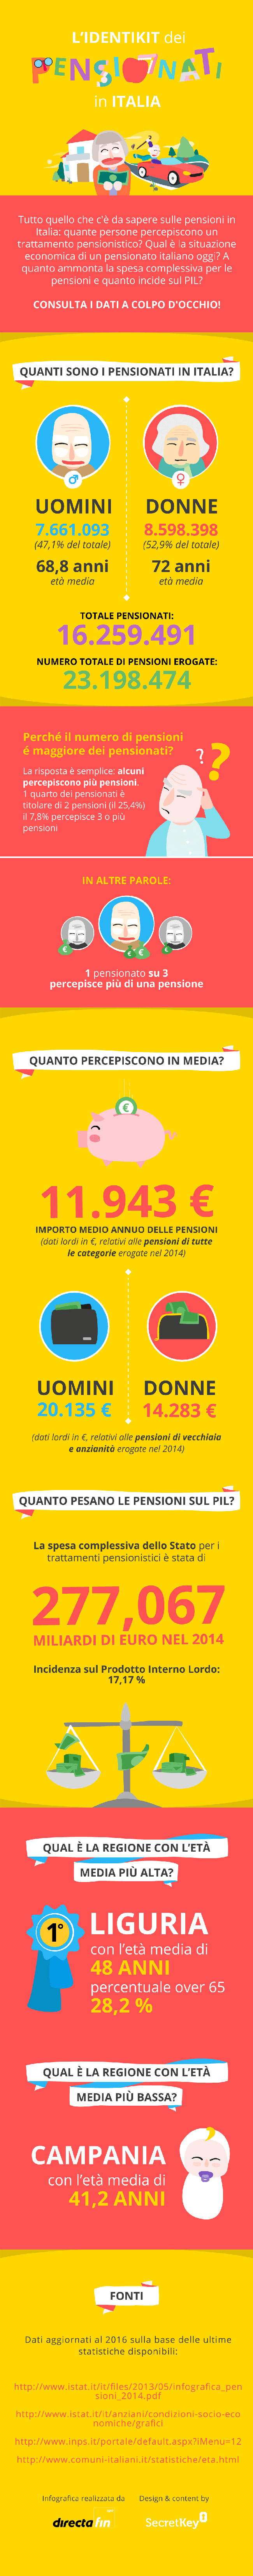 pensioni in Italia, disegni con percentuali e cifre